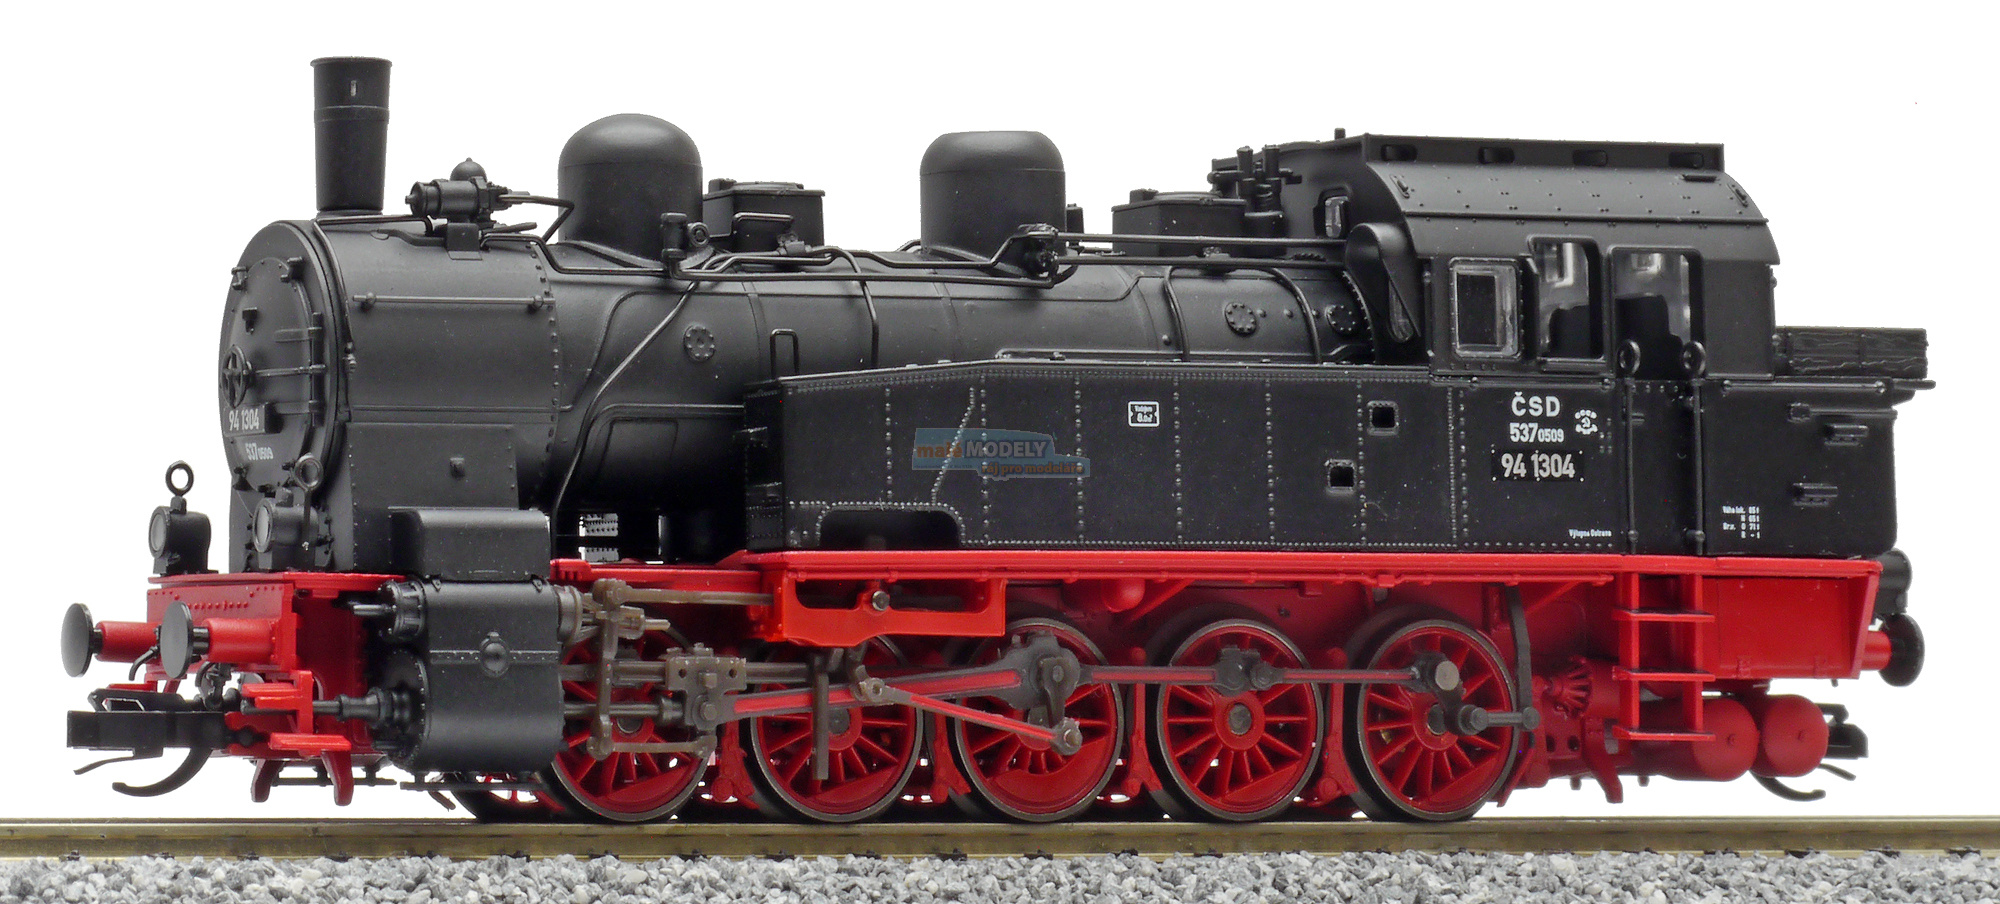 Parní lokomotiva řady 537.05 (ex BR94.5)